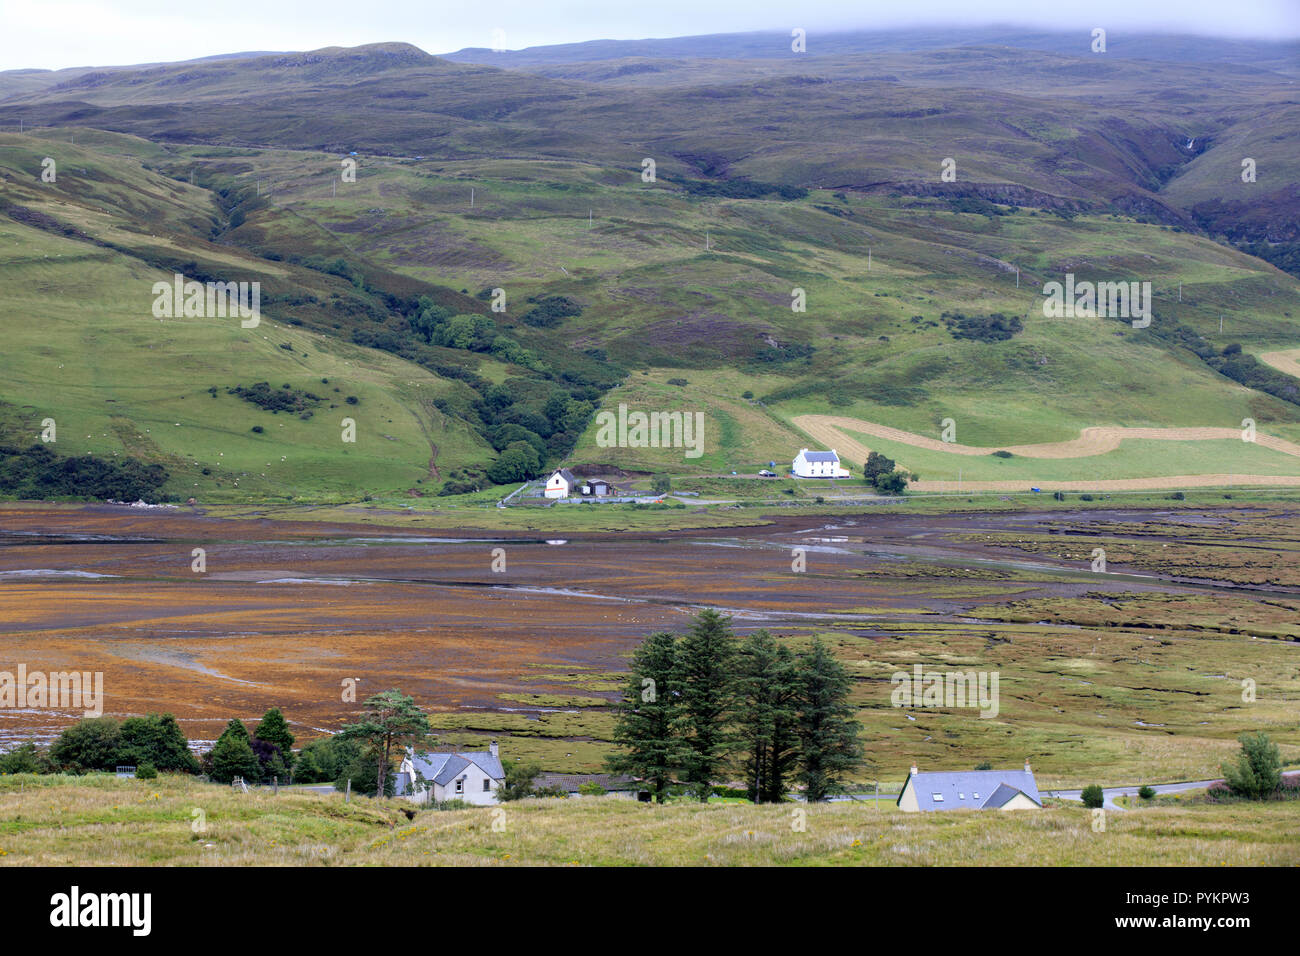 Typical landscape of Scotland, Isle of Skye, Inner Hebrides, Scotland, United Kingdom Stock Photo